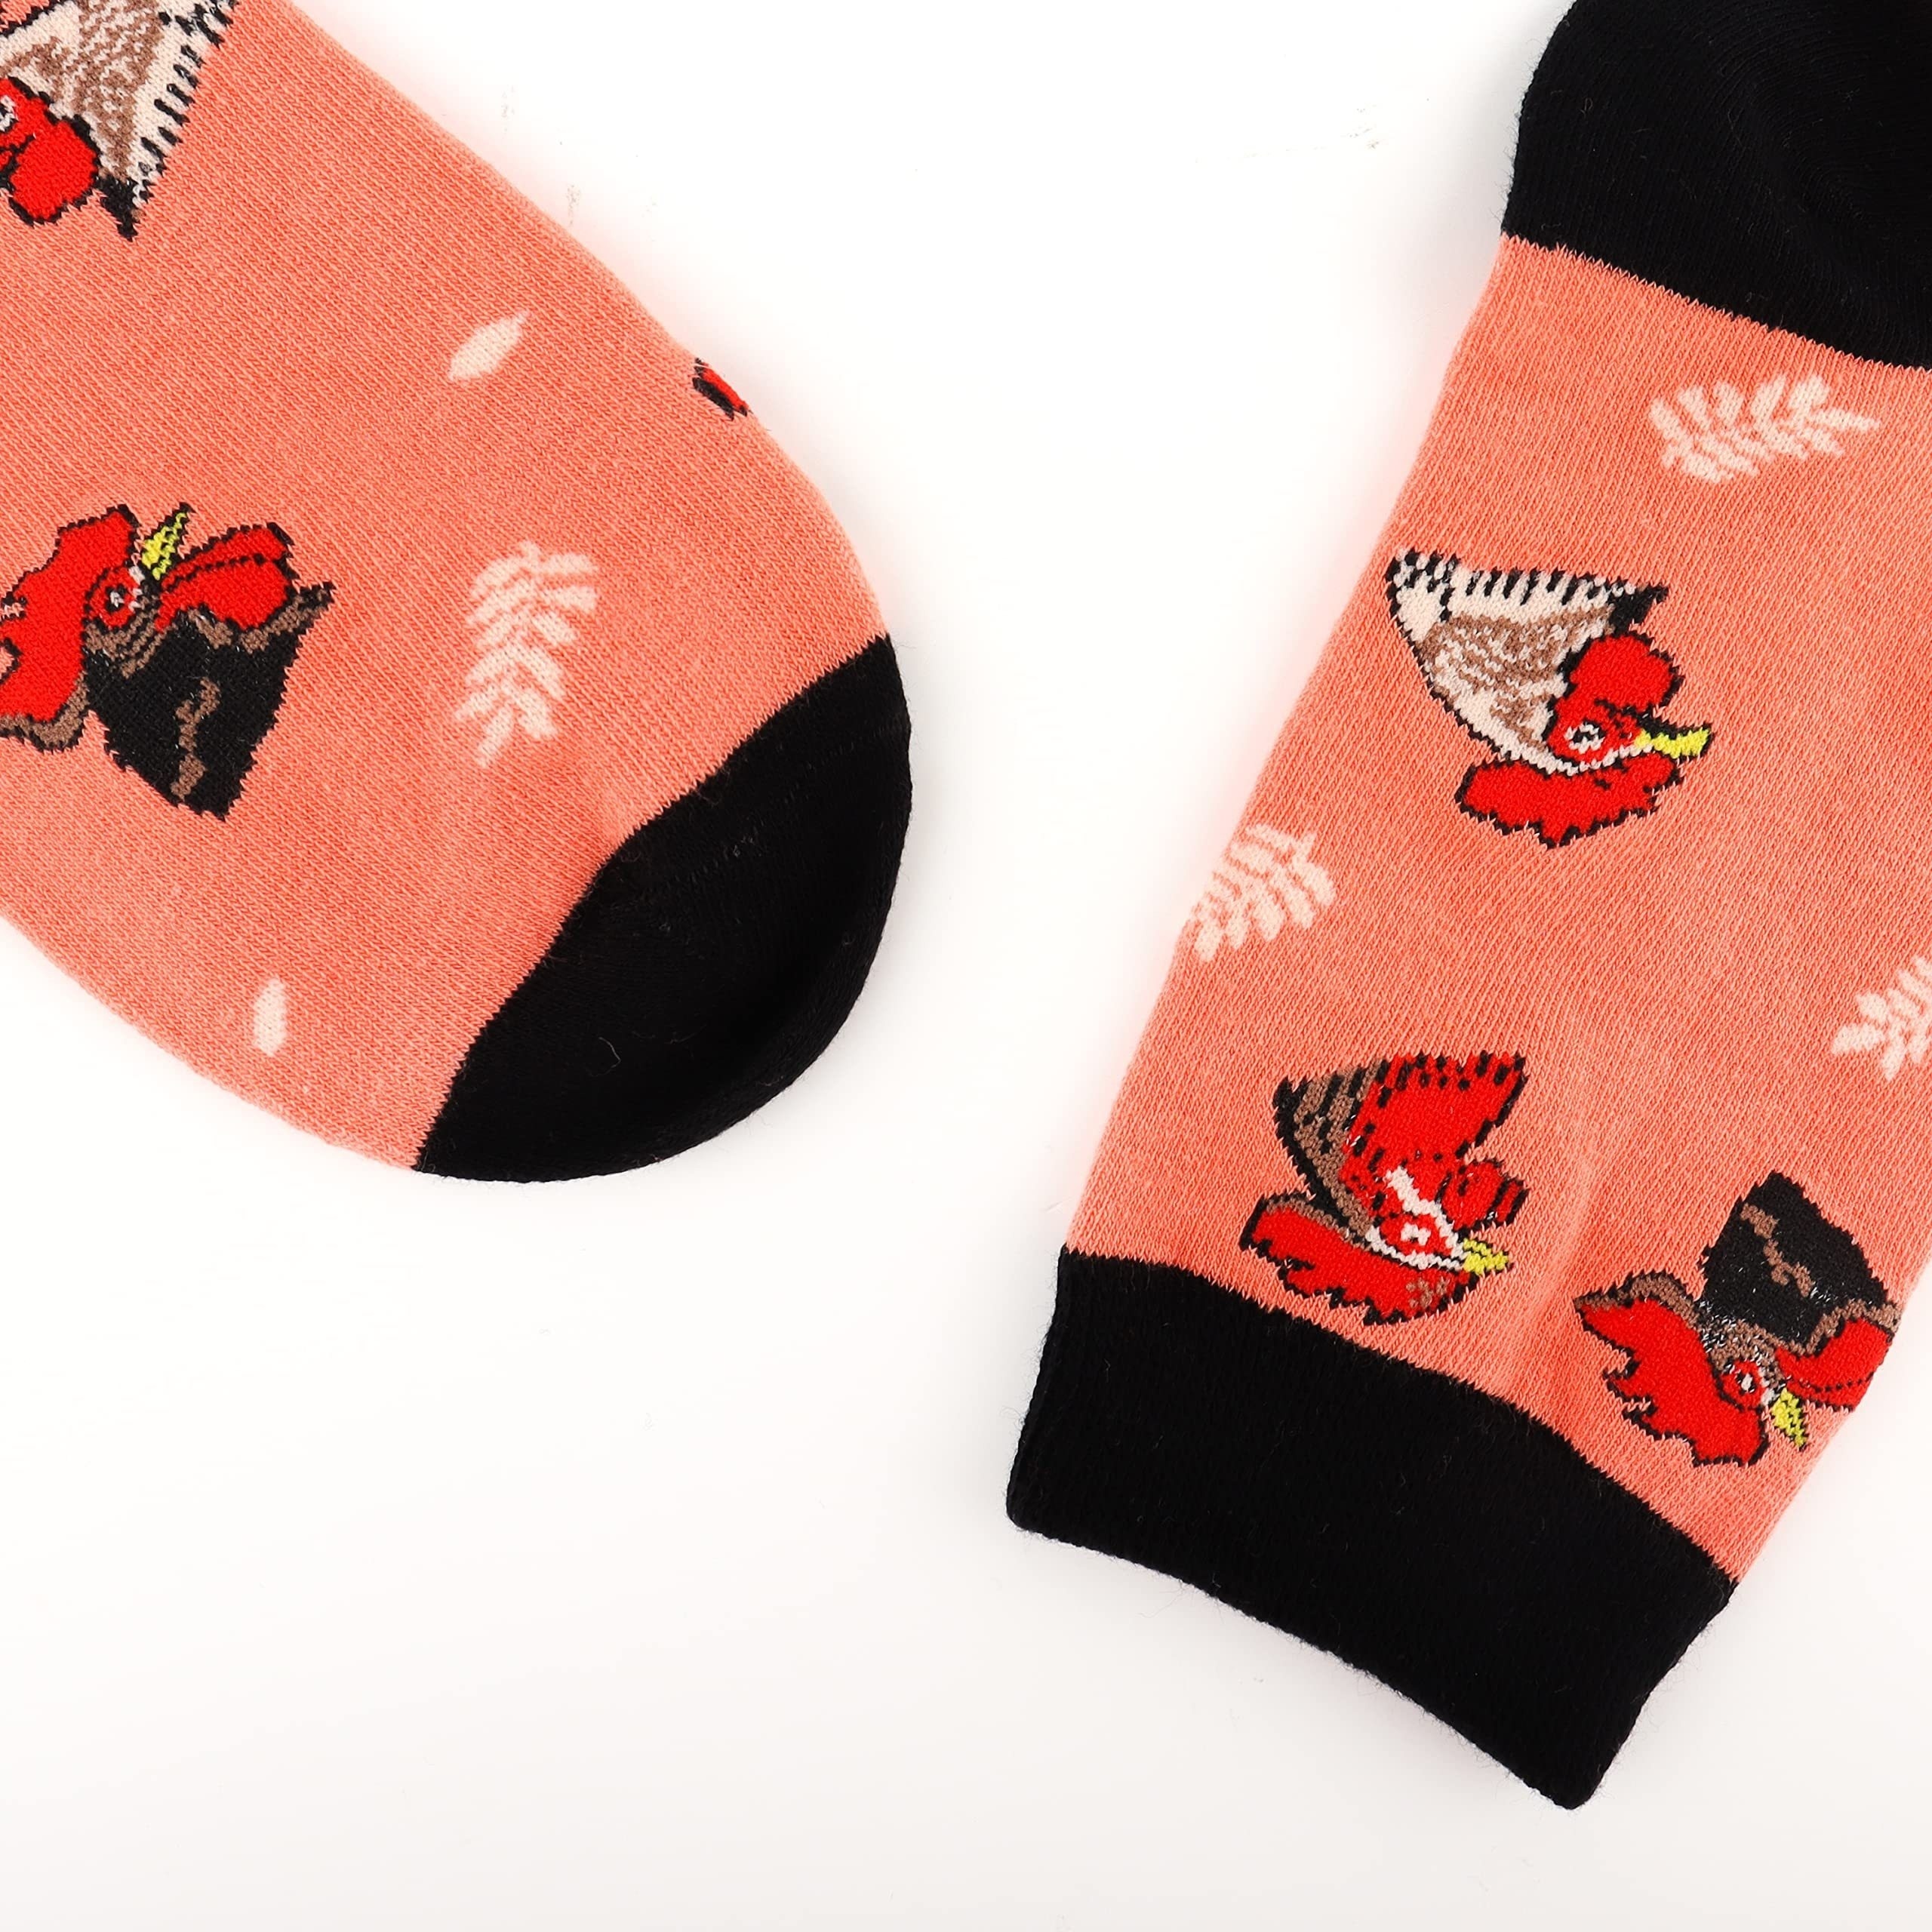 Chicken Crew Socks Silly Socks for Men Funky Socks Funny Socks Novelty Socks